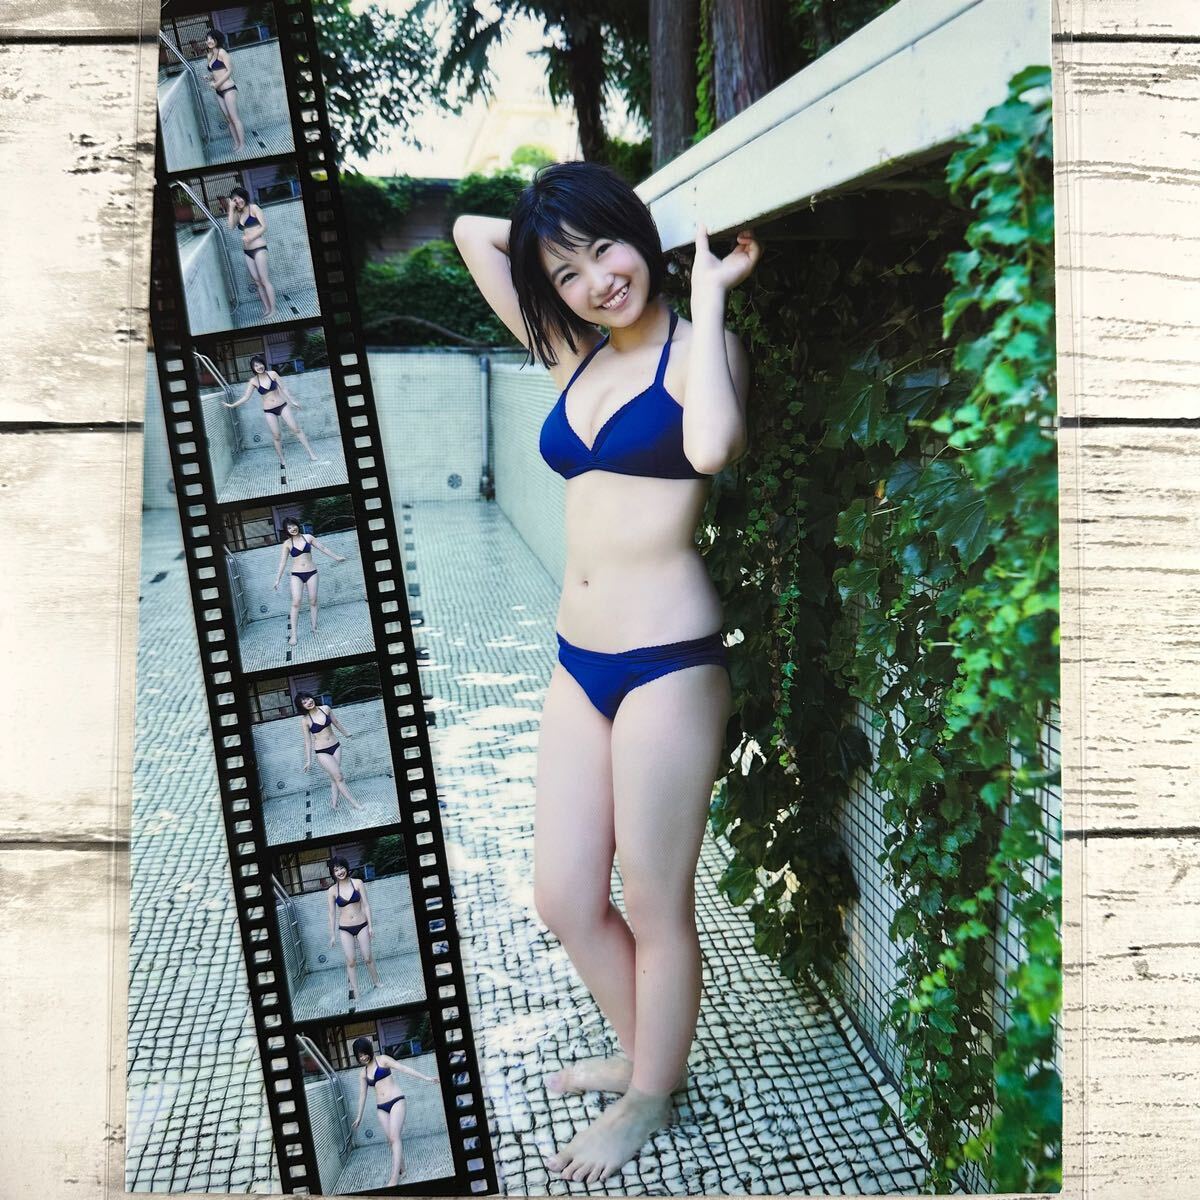 [ высокое качество ламинирование отделка ][ утро . прекрасный Sakura HKT48 ] EX большой .2015 год 12 месяц номер журнал вырезки 5P A4 плёнка купальный костюм bikini model актер женщина super 